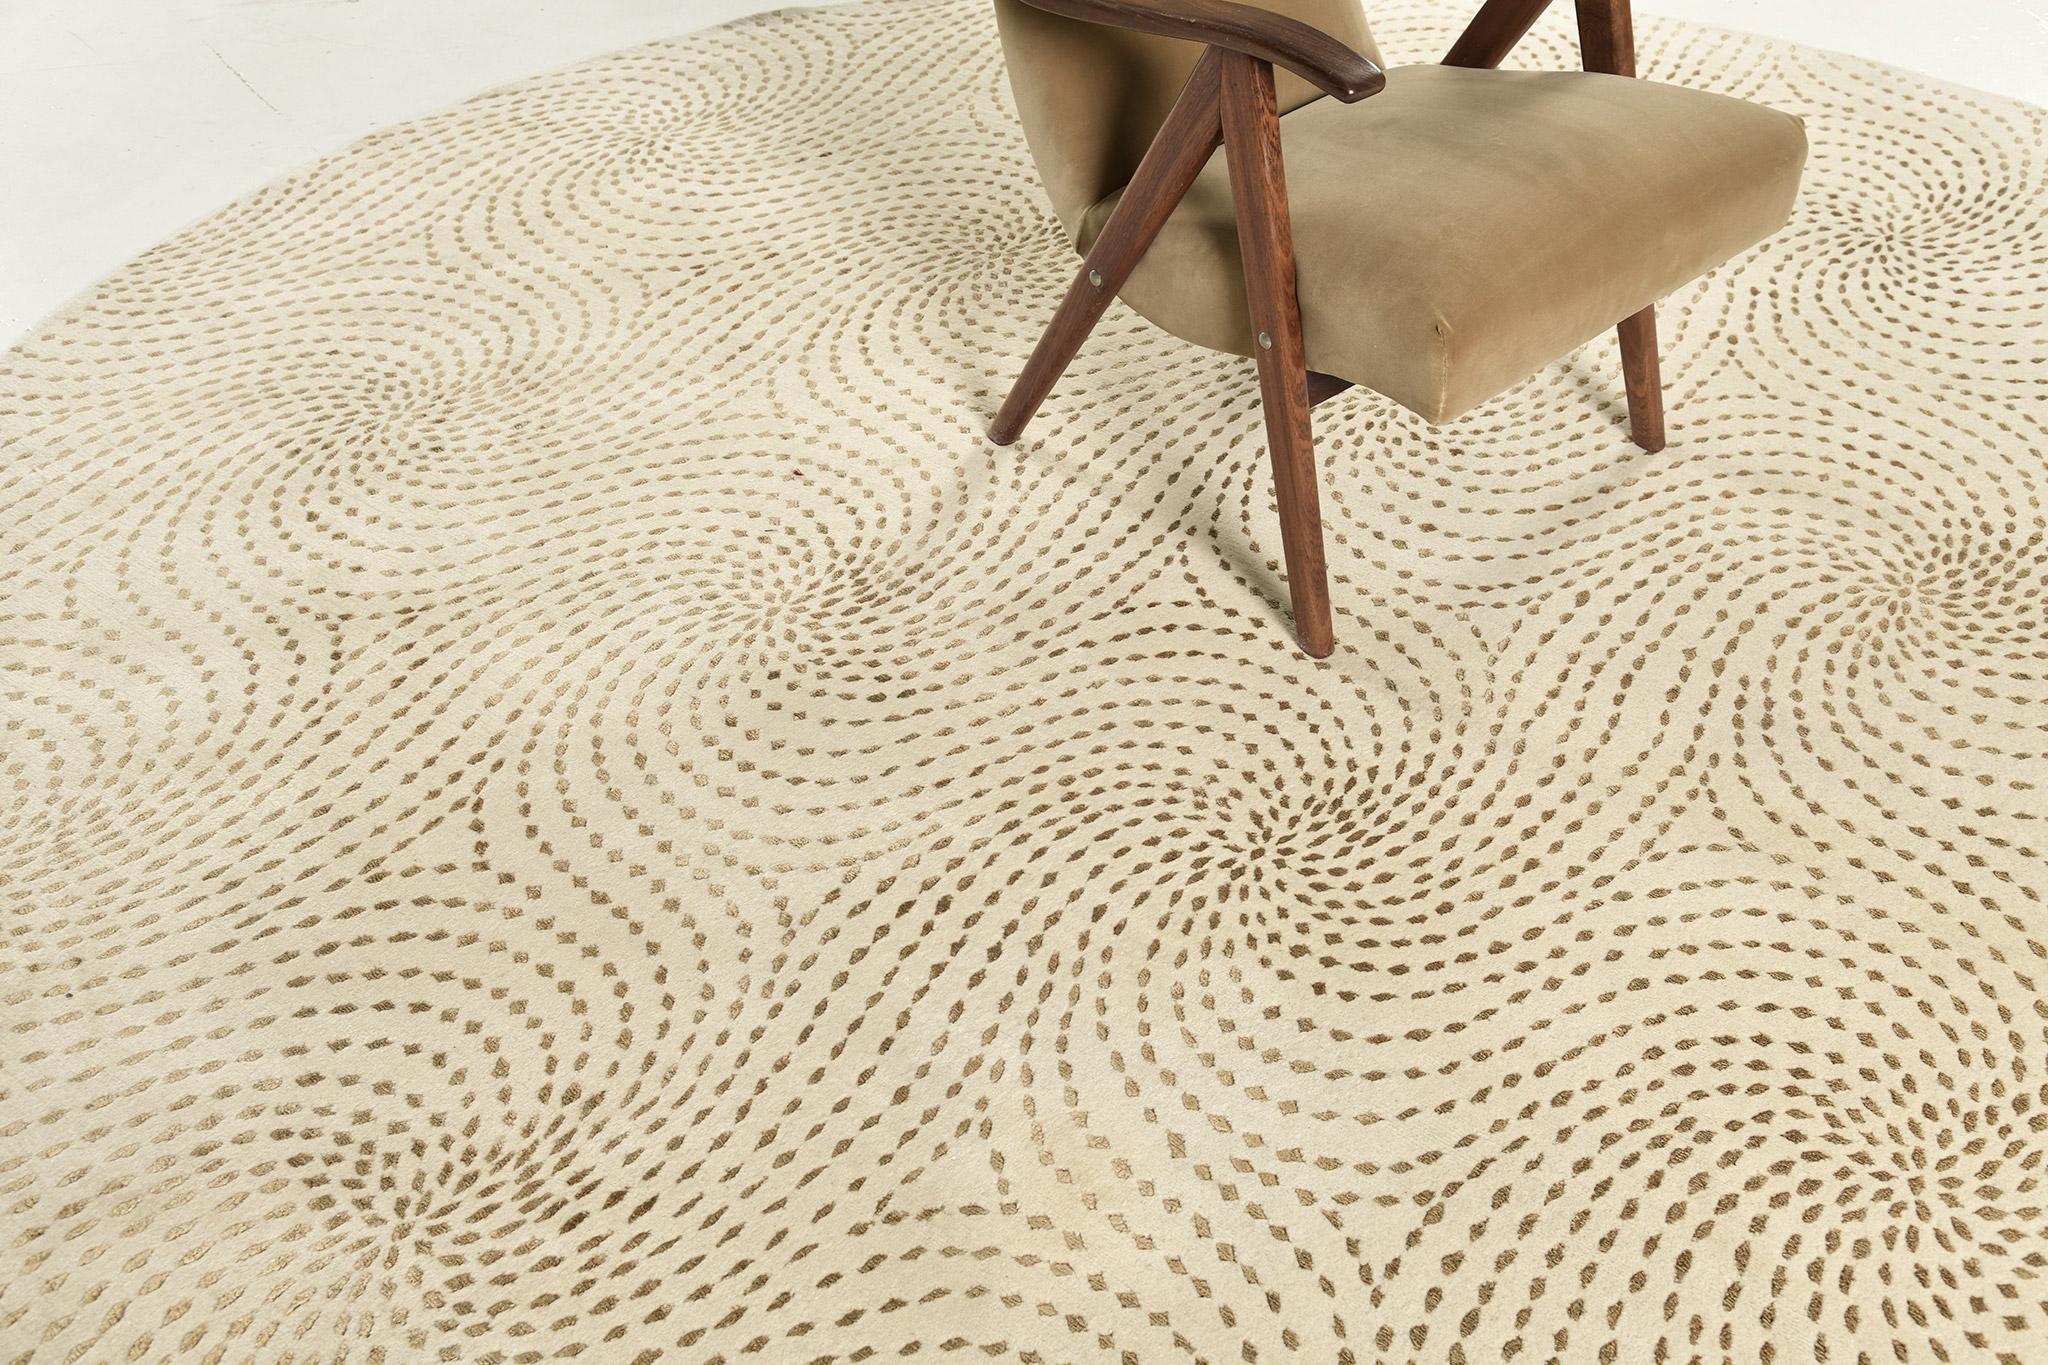 Dieser atemberaubende nepalesische Teppich ist eher für ein zeitgenössisches Thema geeignet und zeichnet sich durch ein elegantes Muster aus gepunkteten Wirbeln aus, die den runden Teppich bilden. Ein Wohndekor, das Ihrem Raum ein bekanntes Ambiente